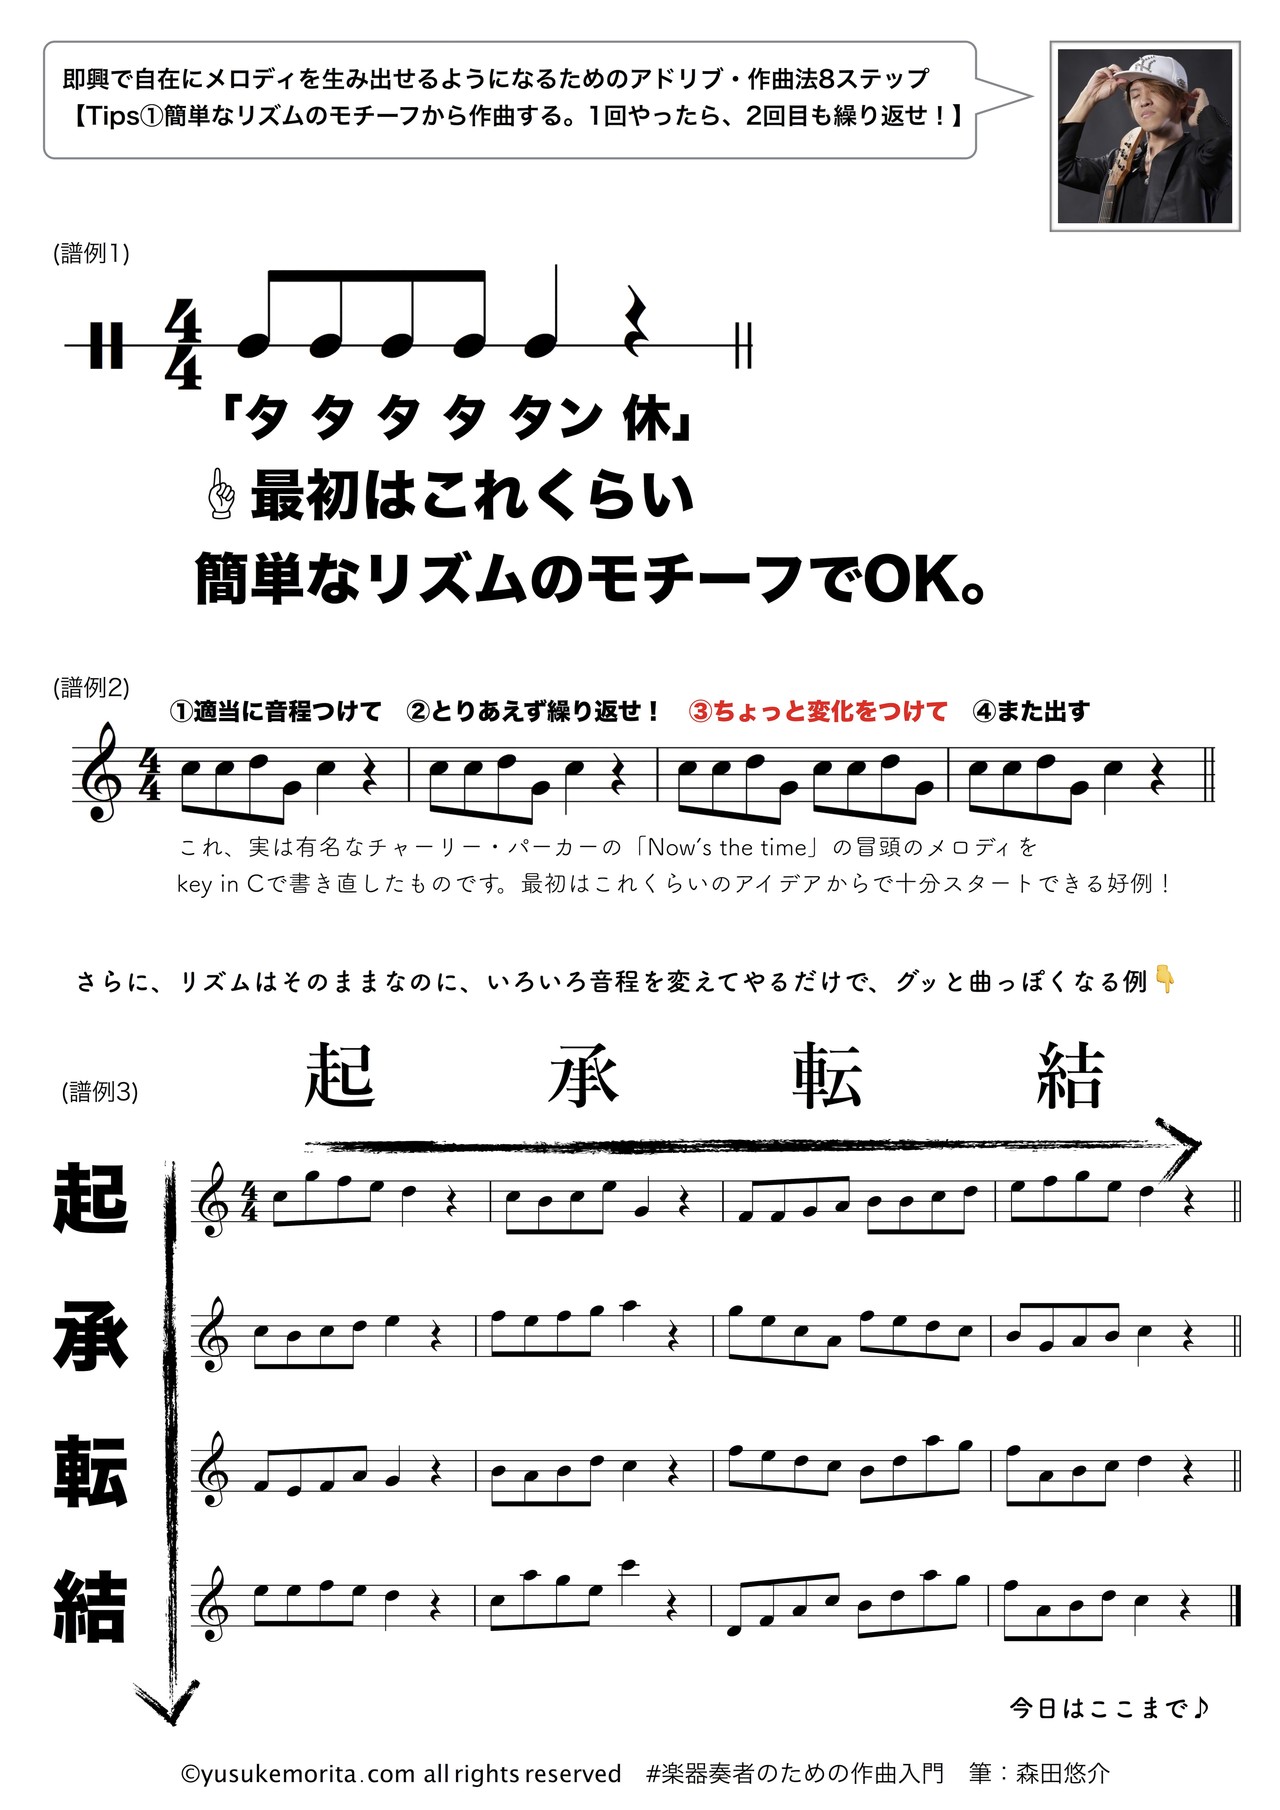 アドリブ法 簡単なリズムのモチーフから作曲する １回やったら ２回目も繰り返せ Yusuke Morita Blog